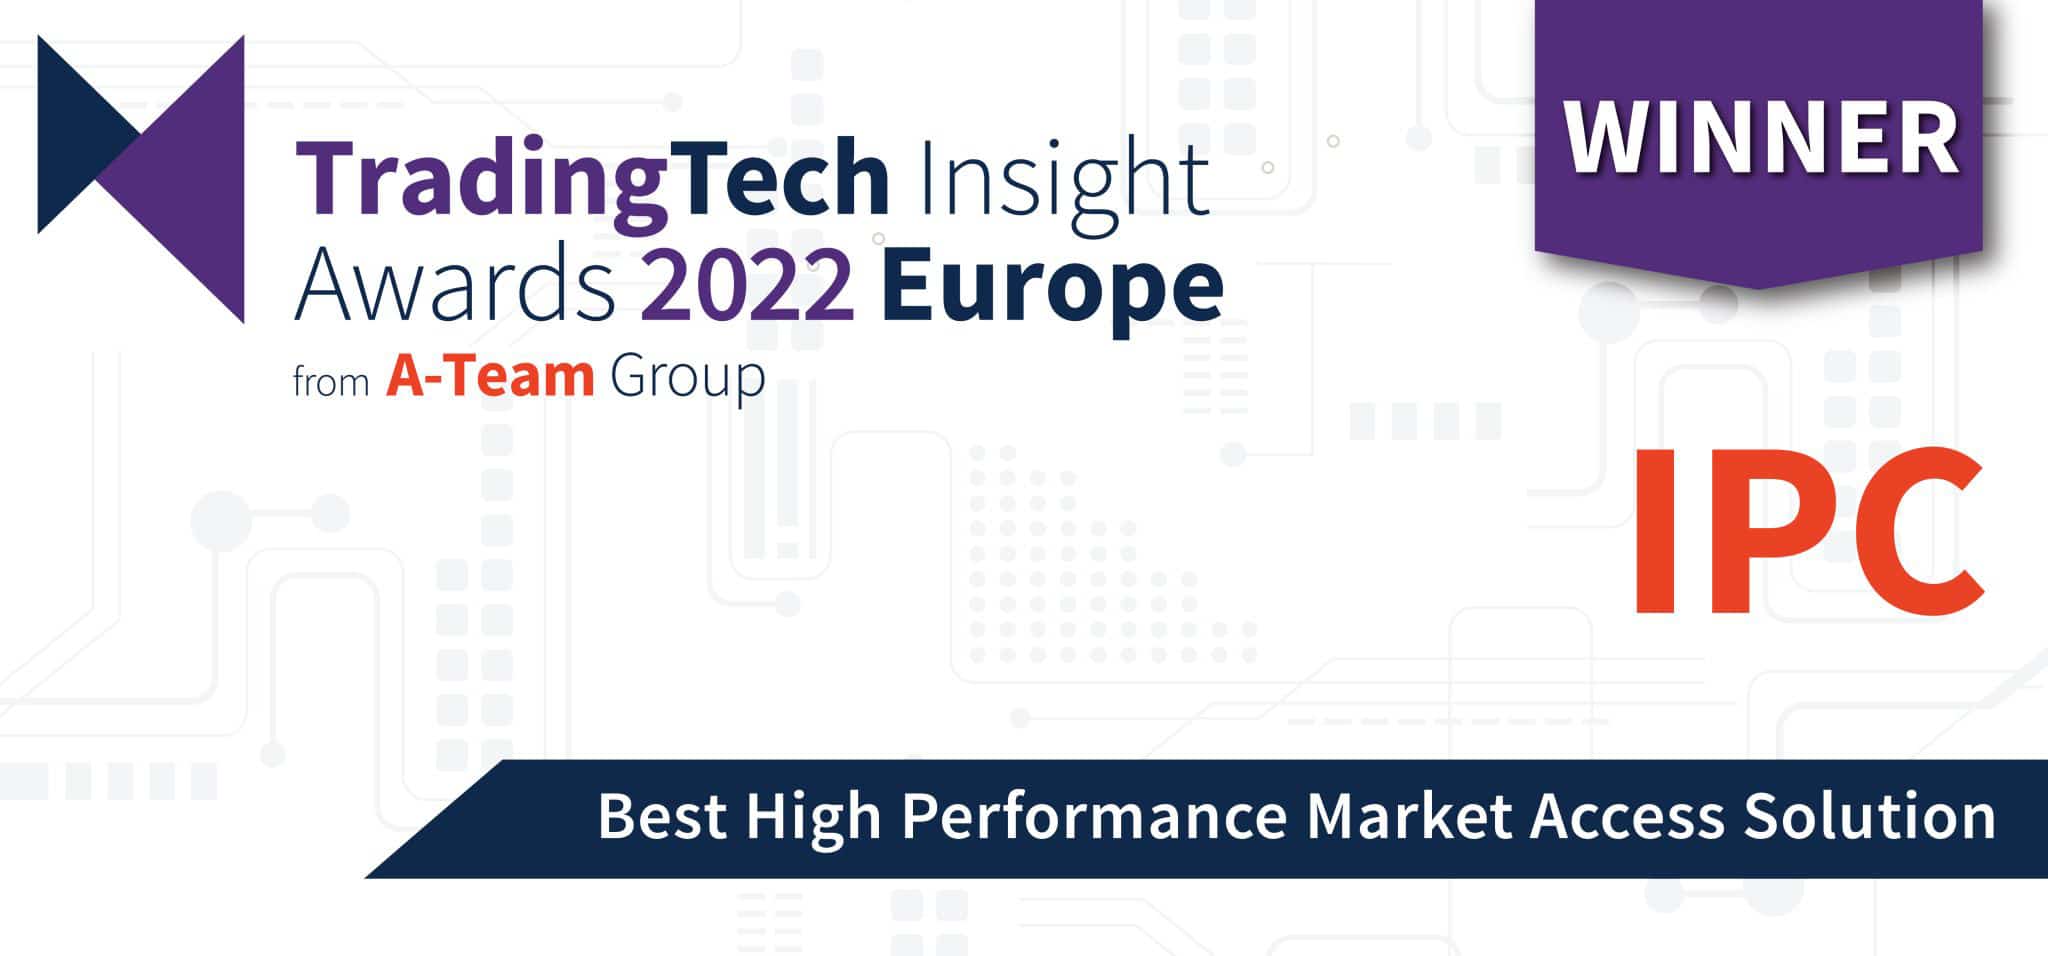 ‘Best High Performance Market Access Solution’ – TradingTech Insight Awards Europe 2022